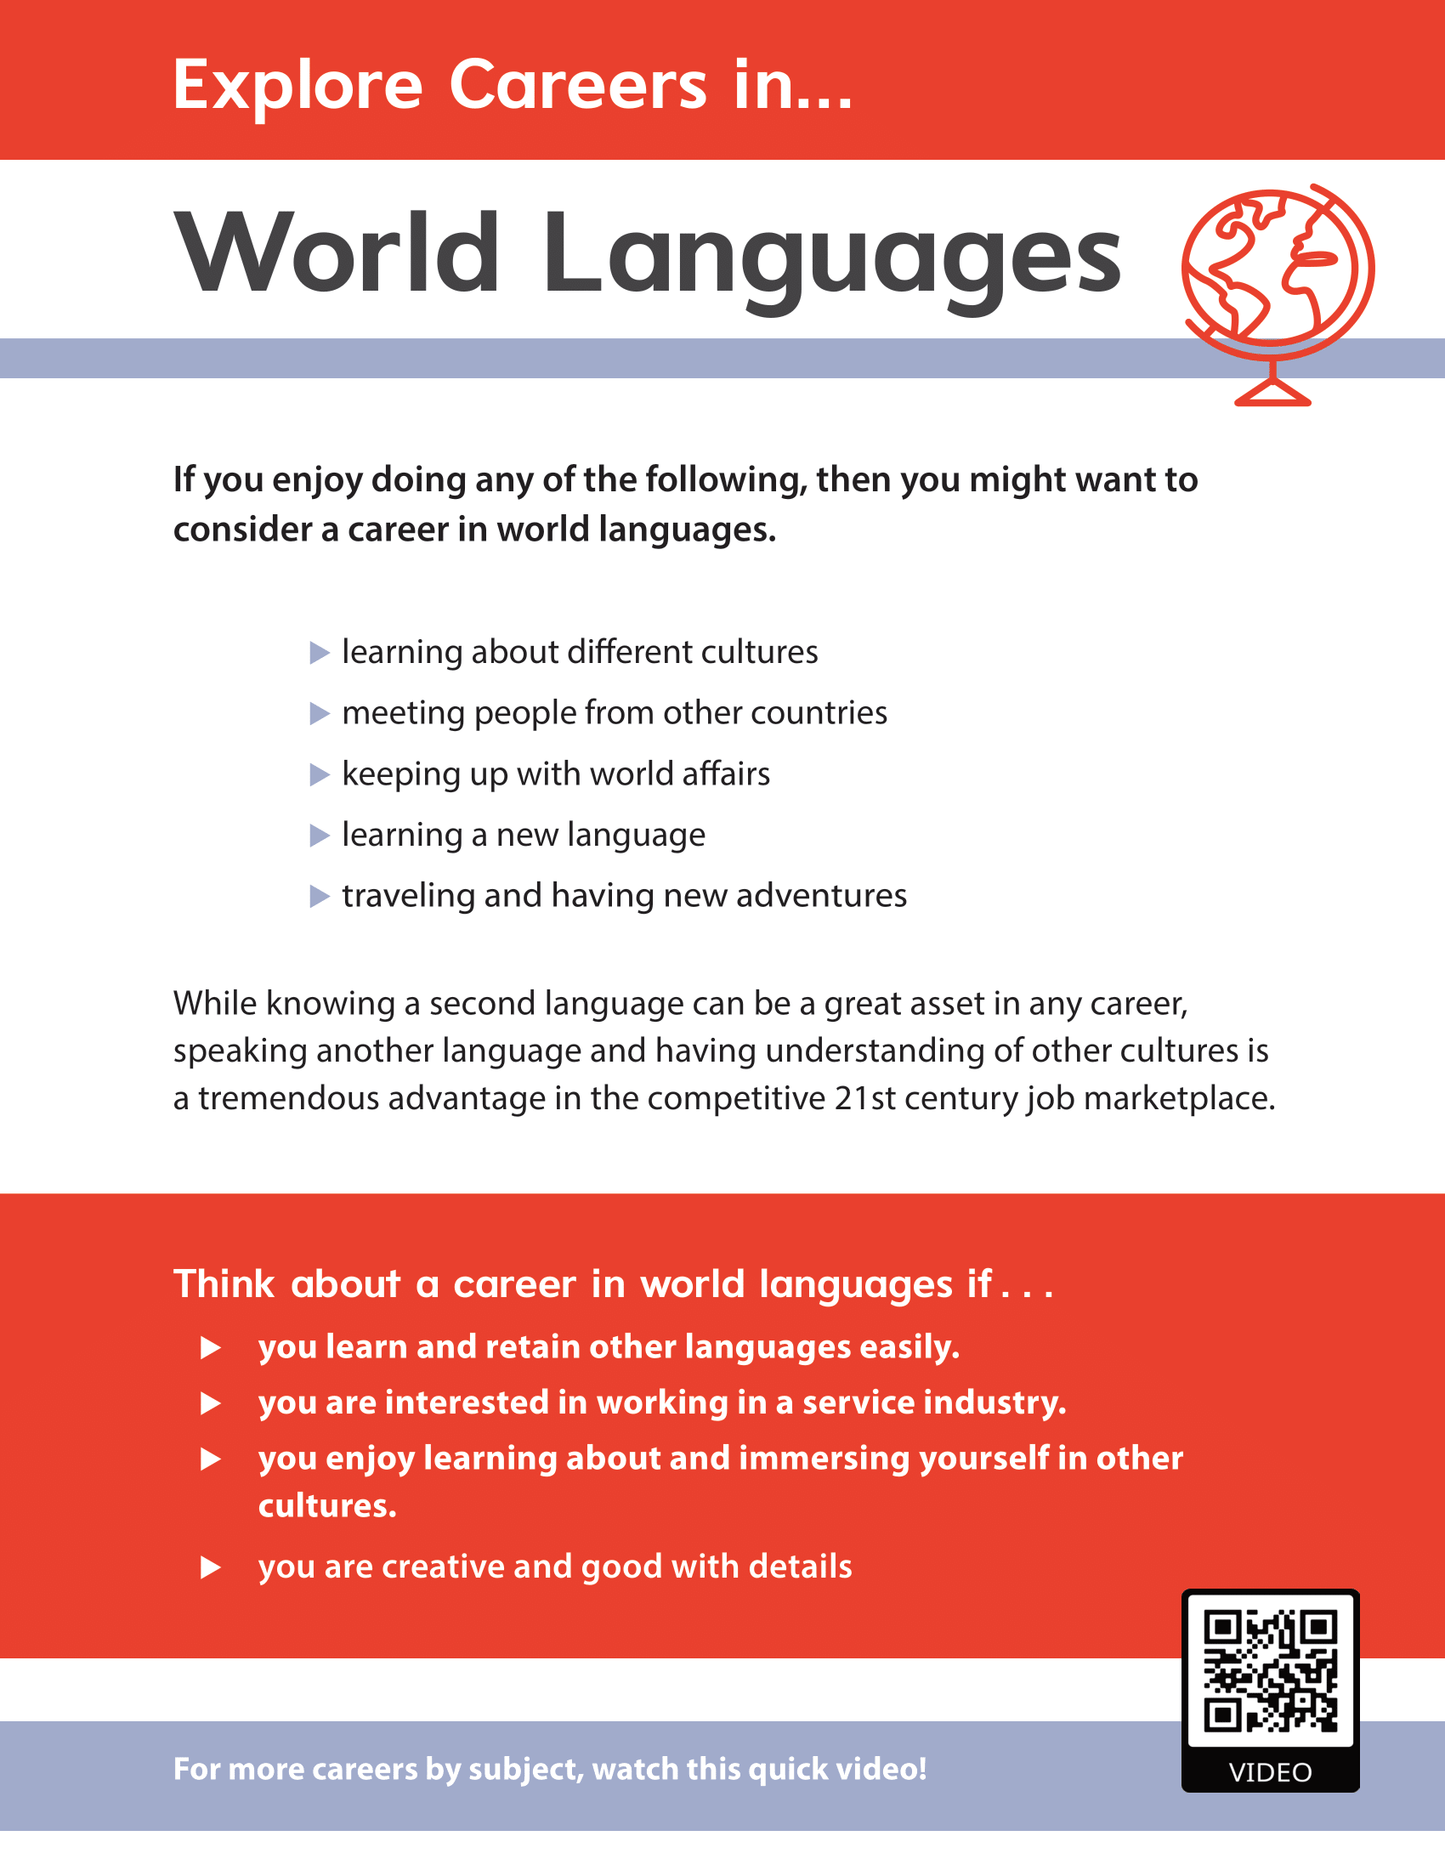 Explore Careers in World Languages